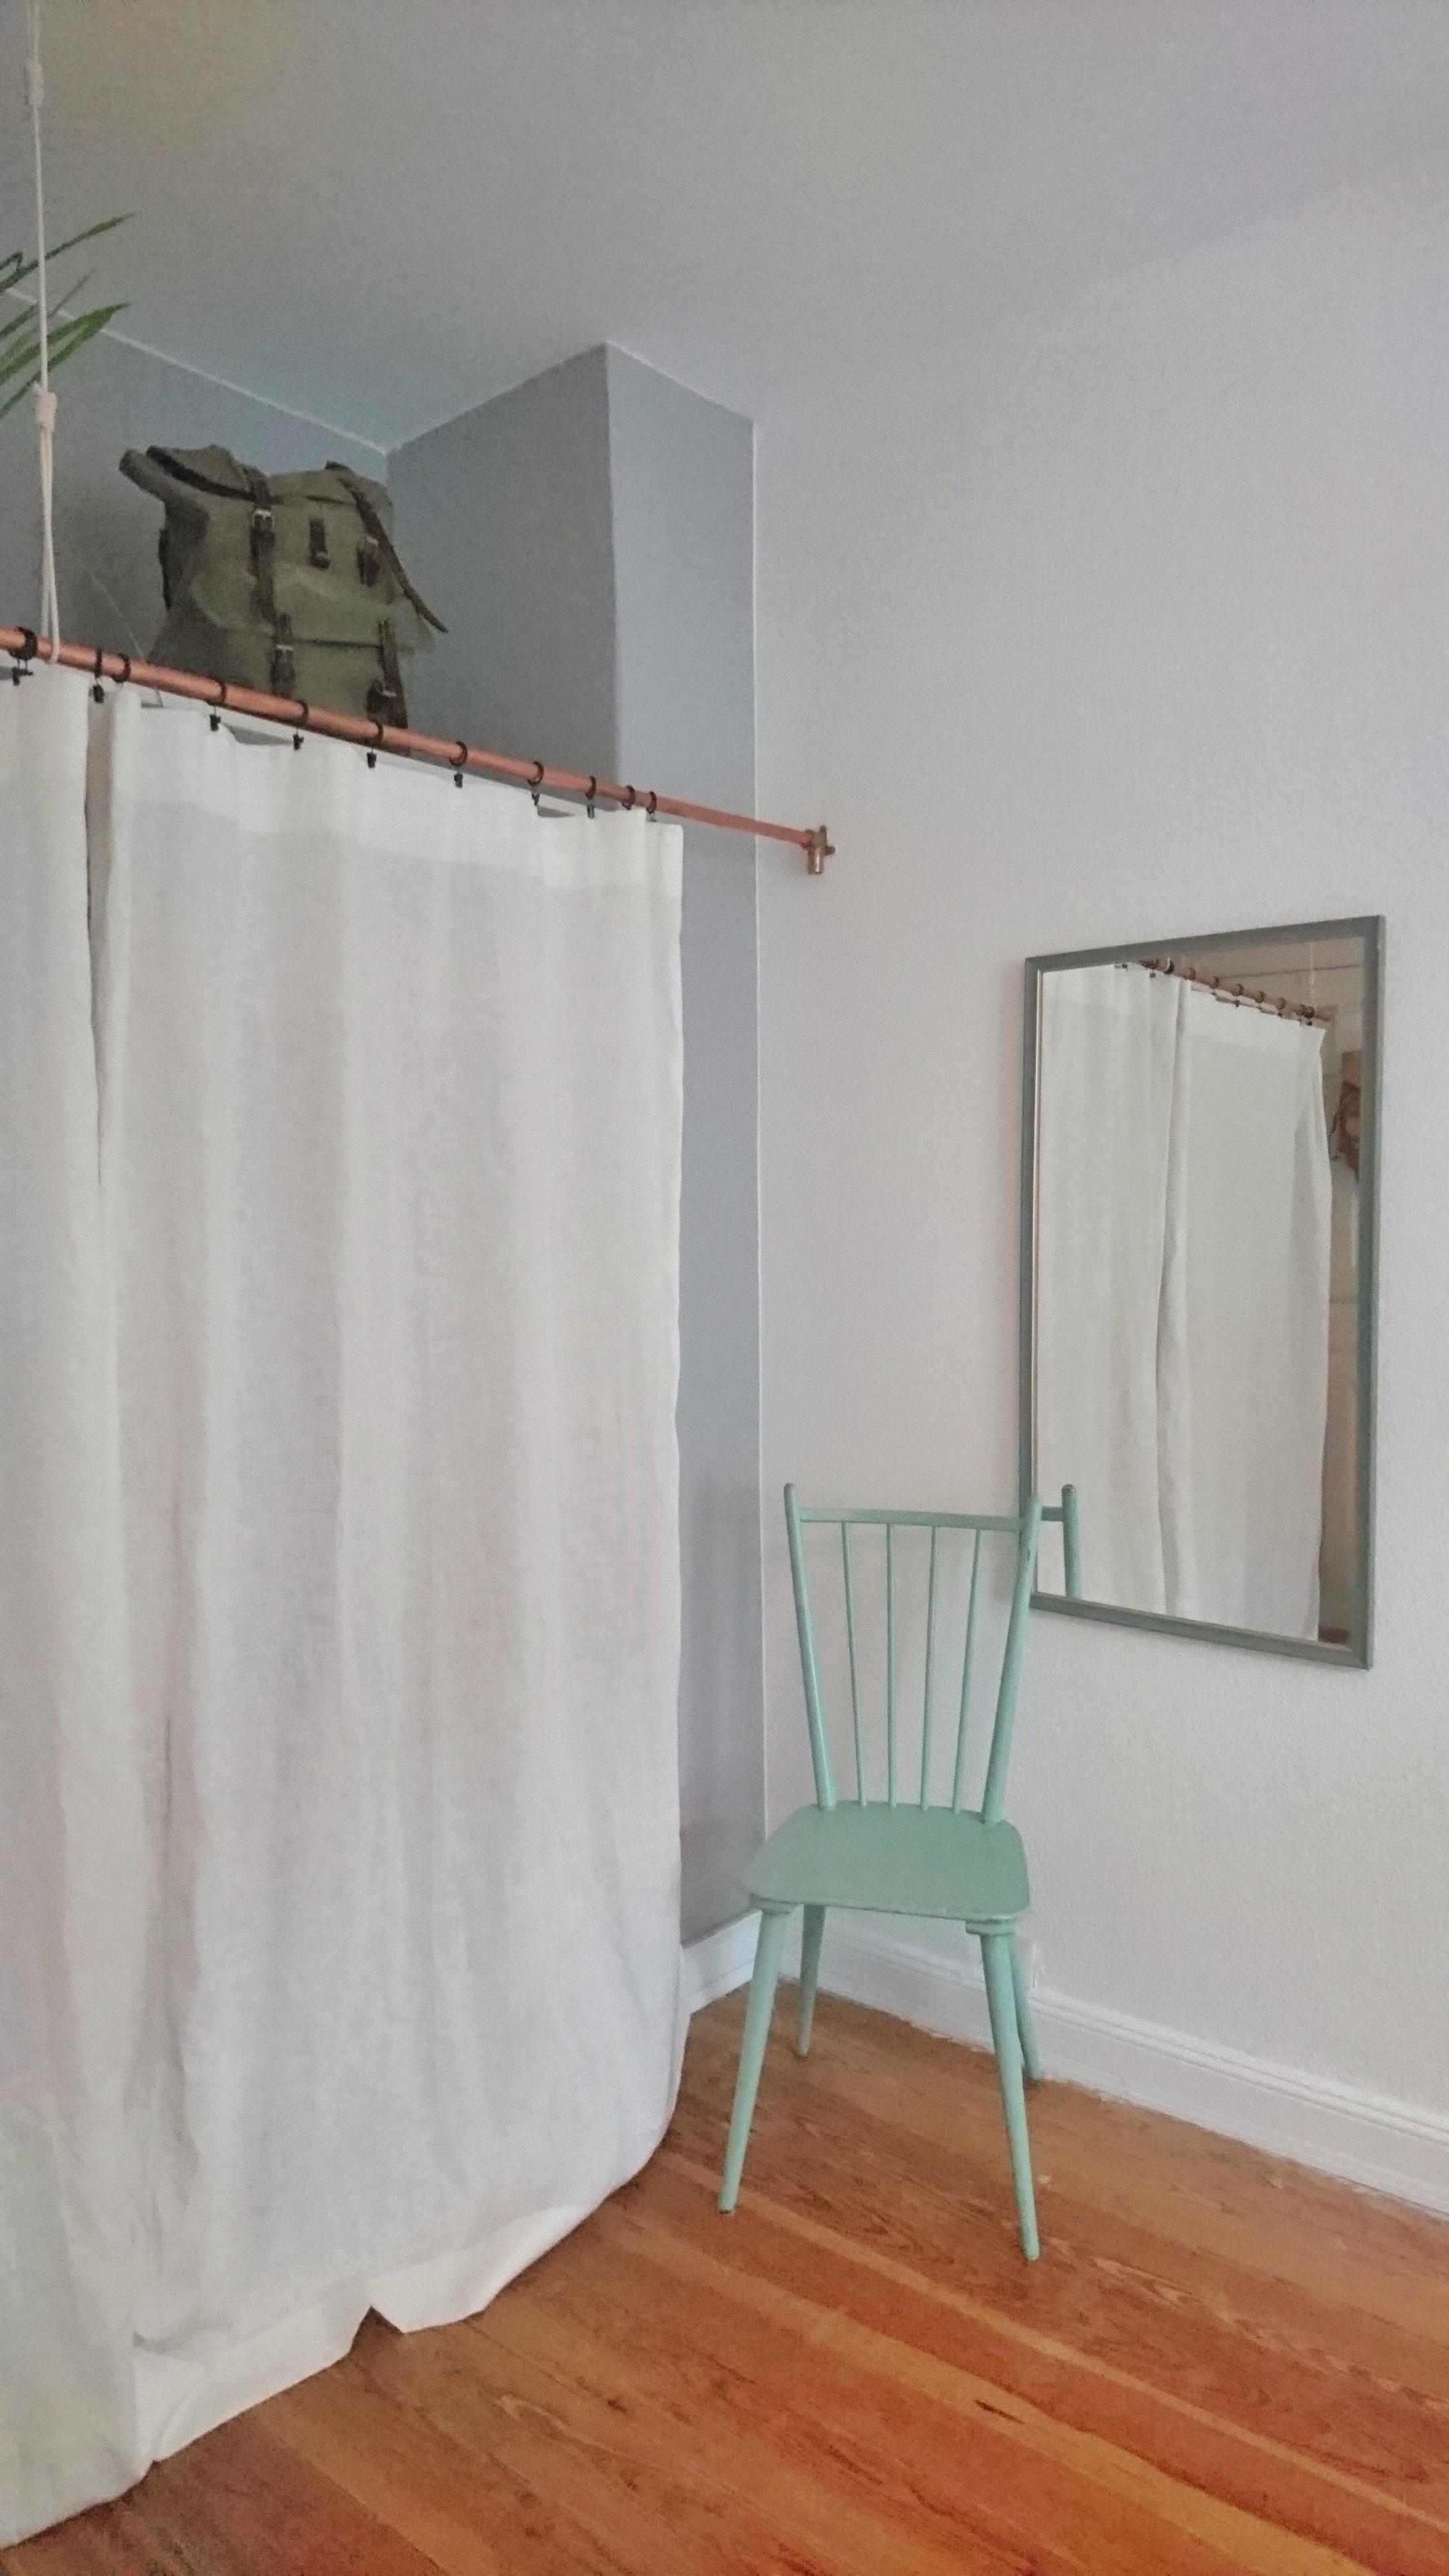 DIY-Kleiderschrank mit Vorhang statt Türen und einem Kupferrohr als Vorhangstange #DIY #kleiderschrank #kupfer